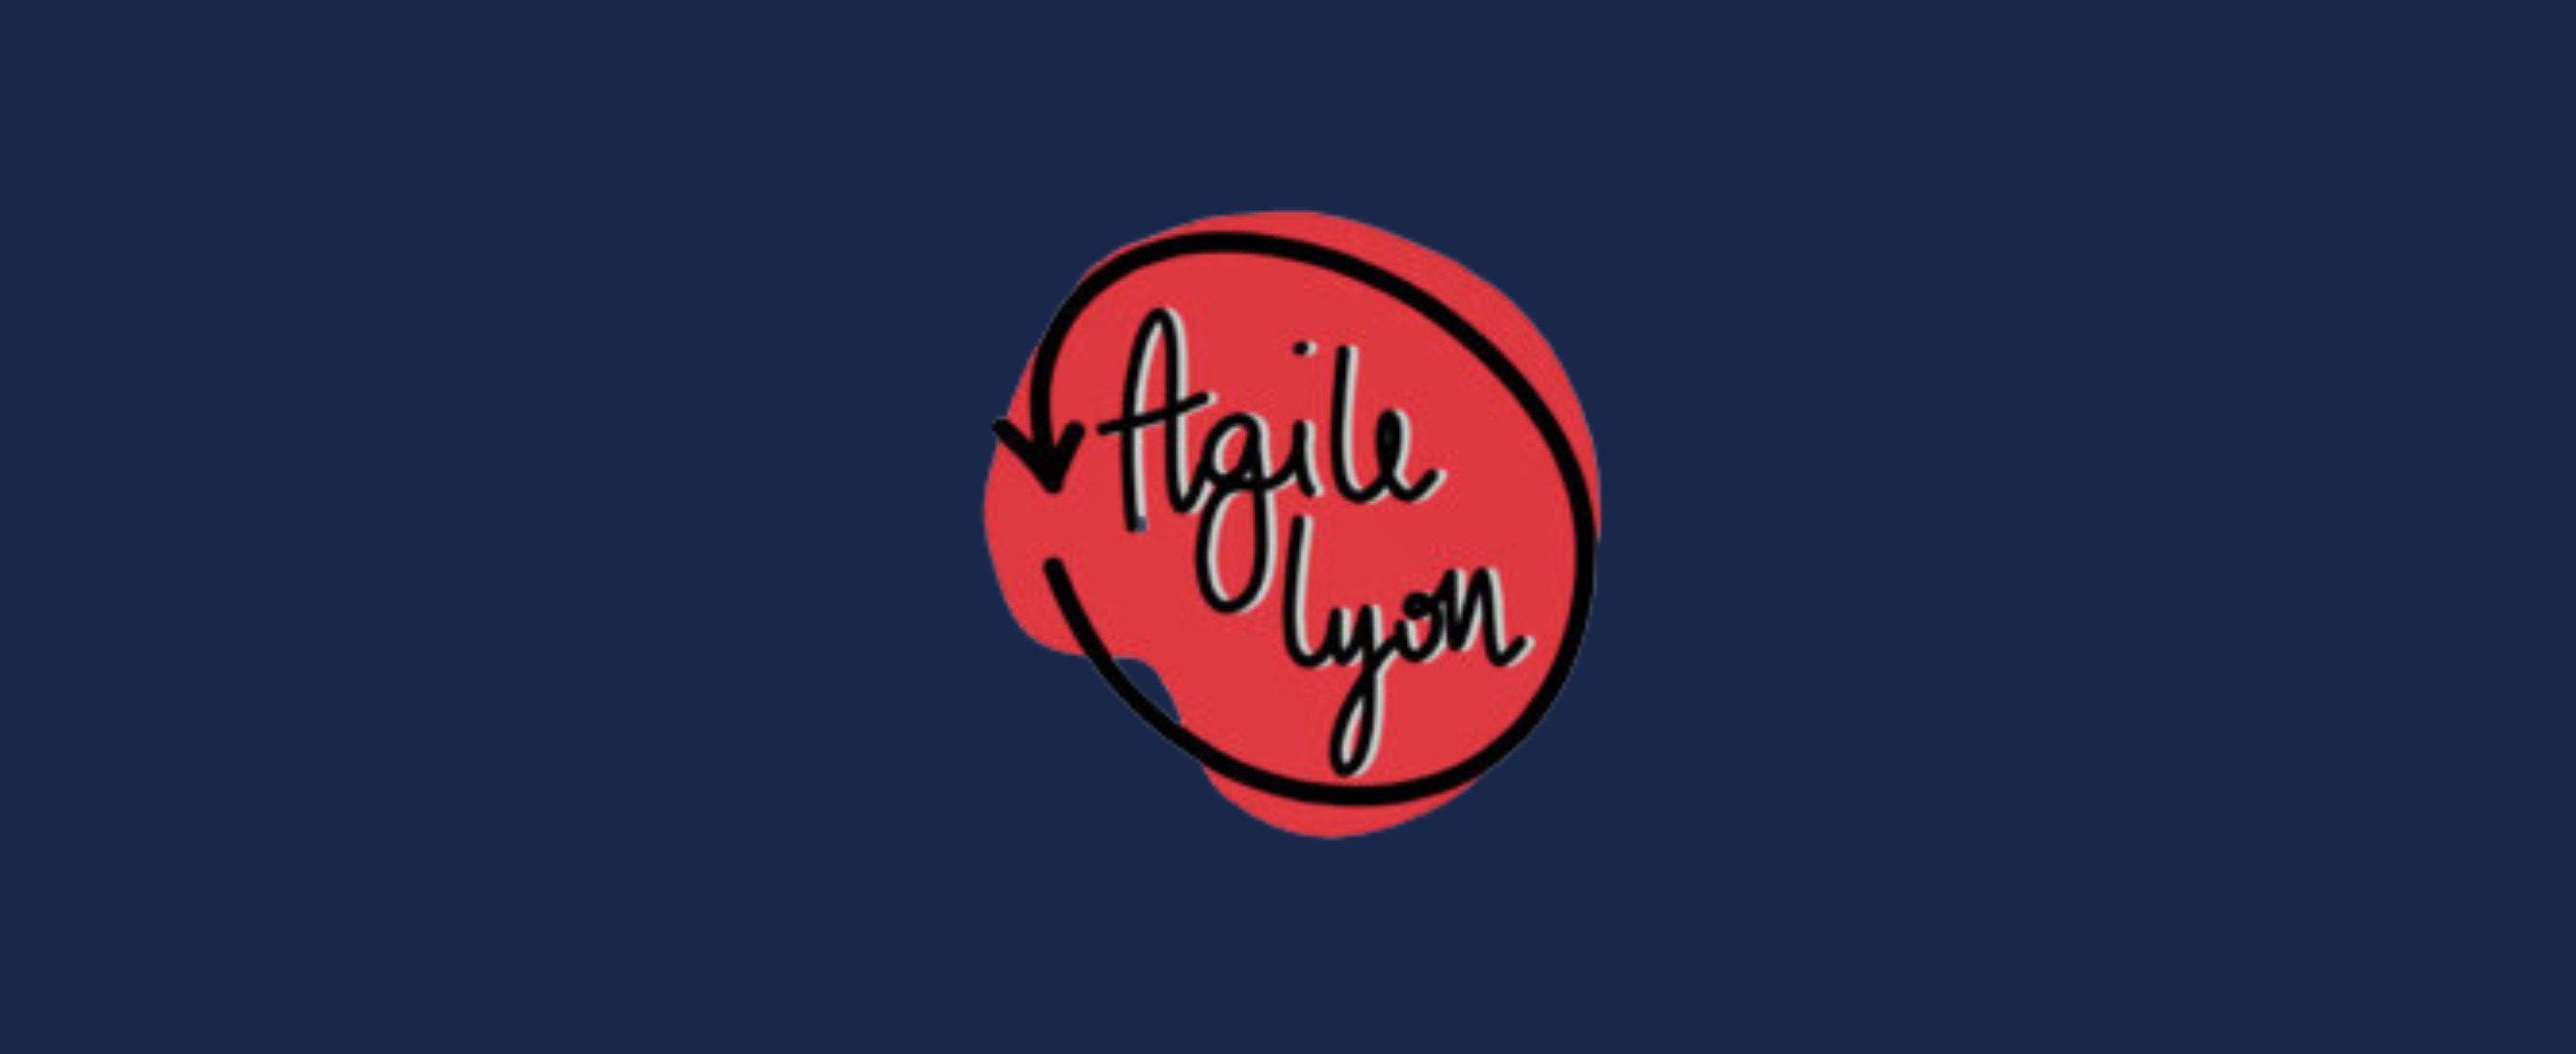 Conférences Agile Lyon en vidéo